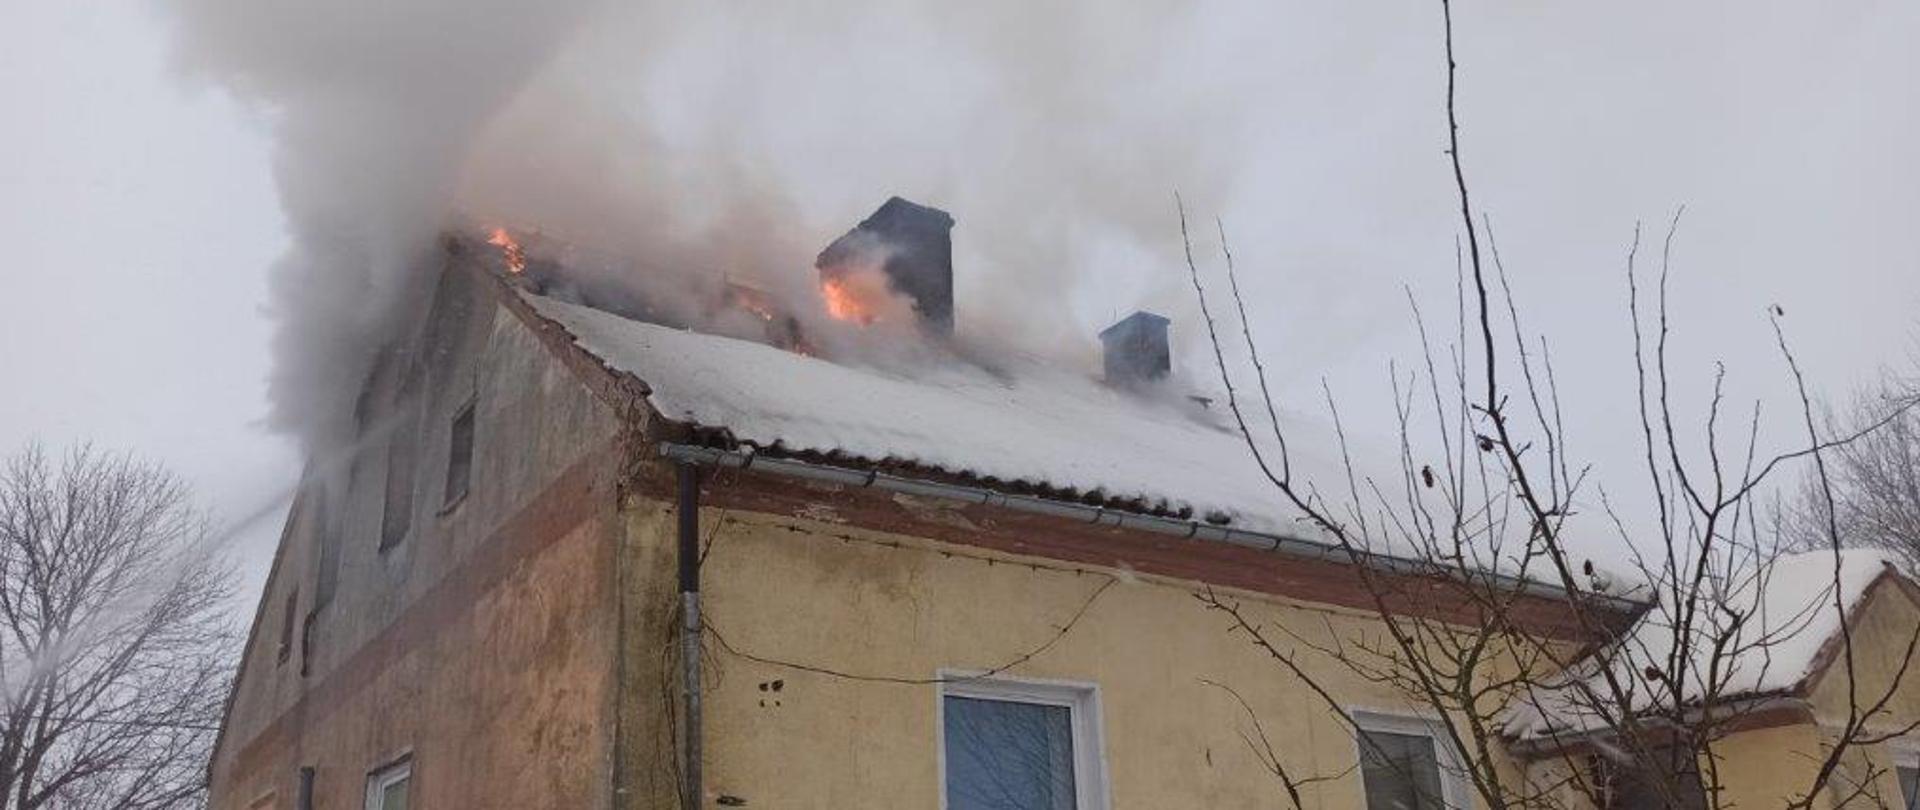 Budynek mieszkalny wielorodzinny z widocznym pożarem dachu